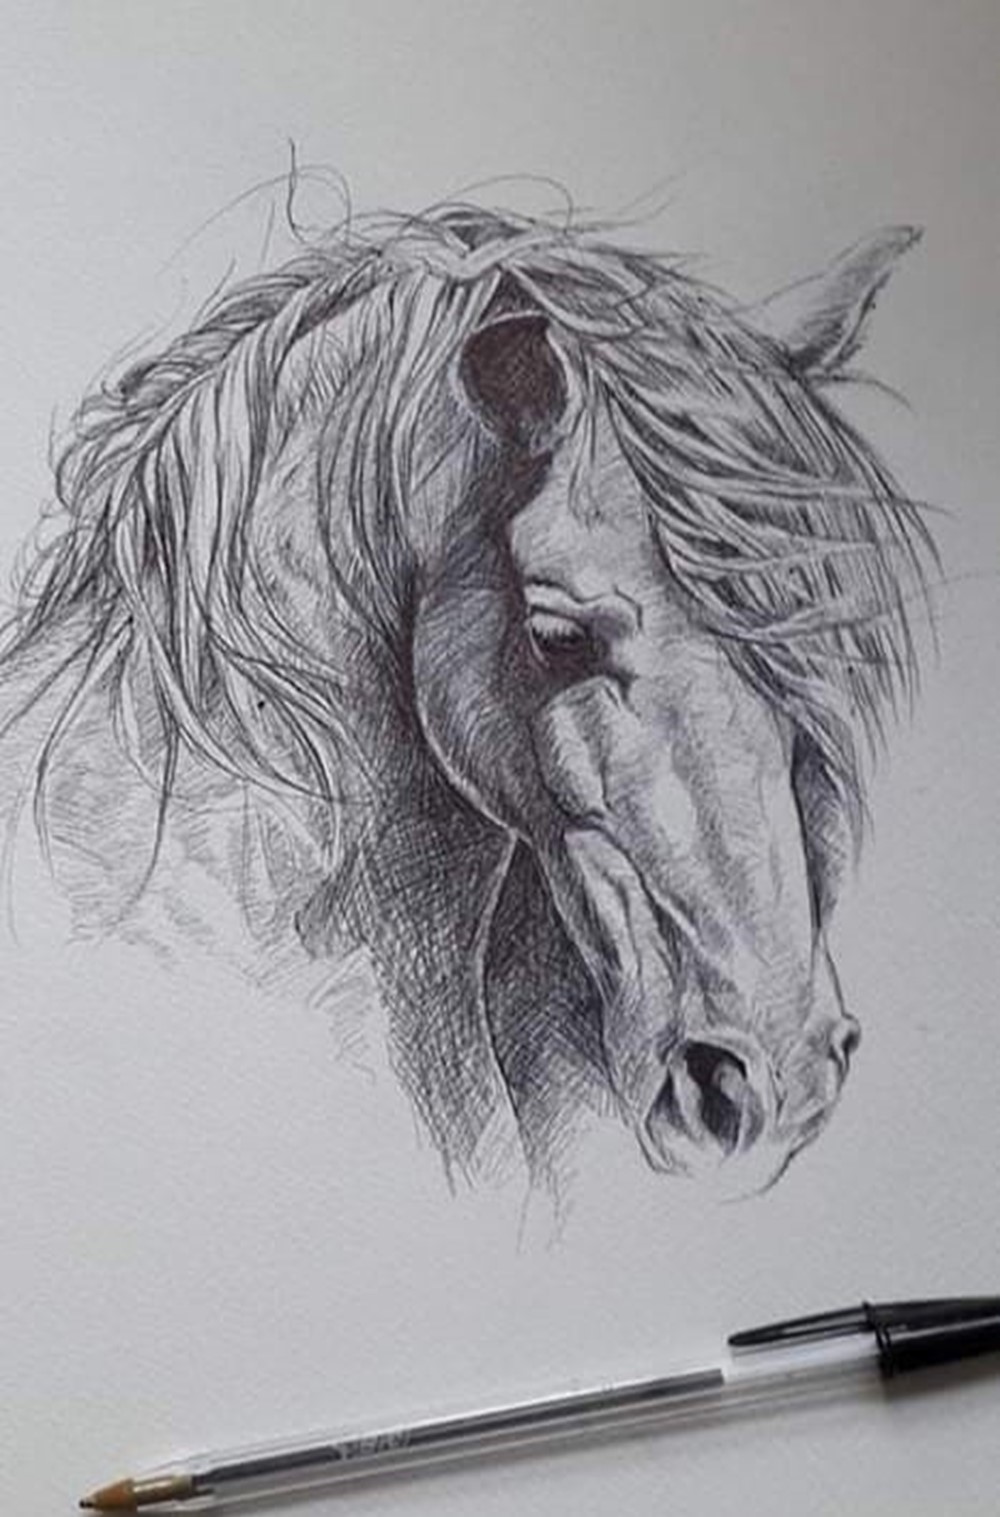 Learner sketch depicting horse